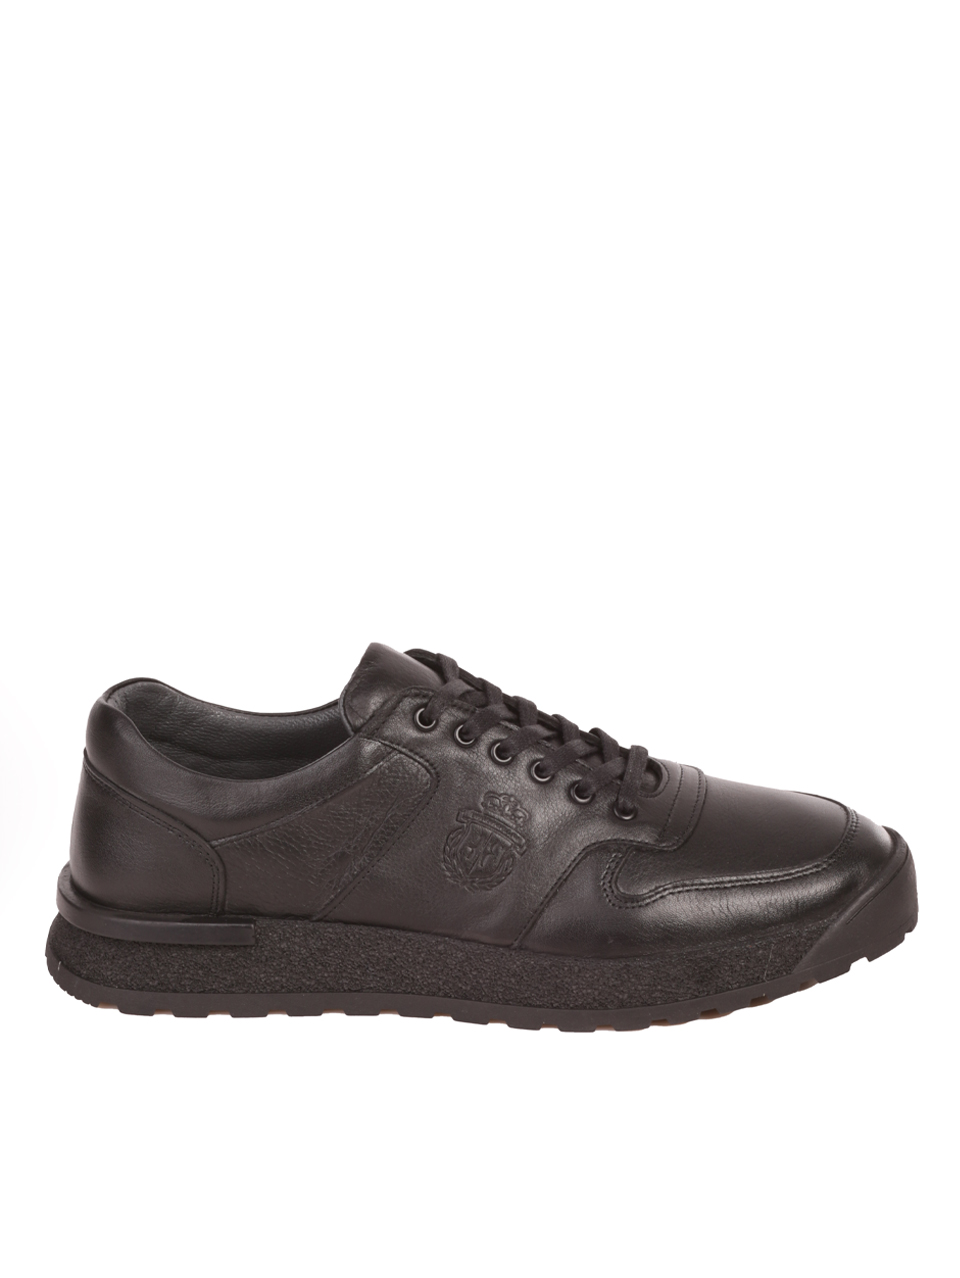 Eжедневни мъжки обувки от естествена кожа в черно 7AT-23731 black